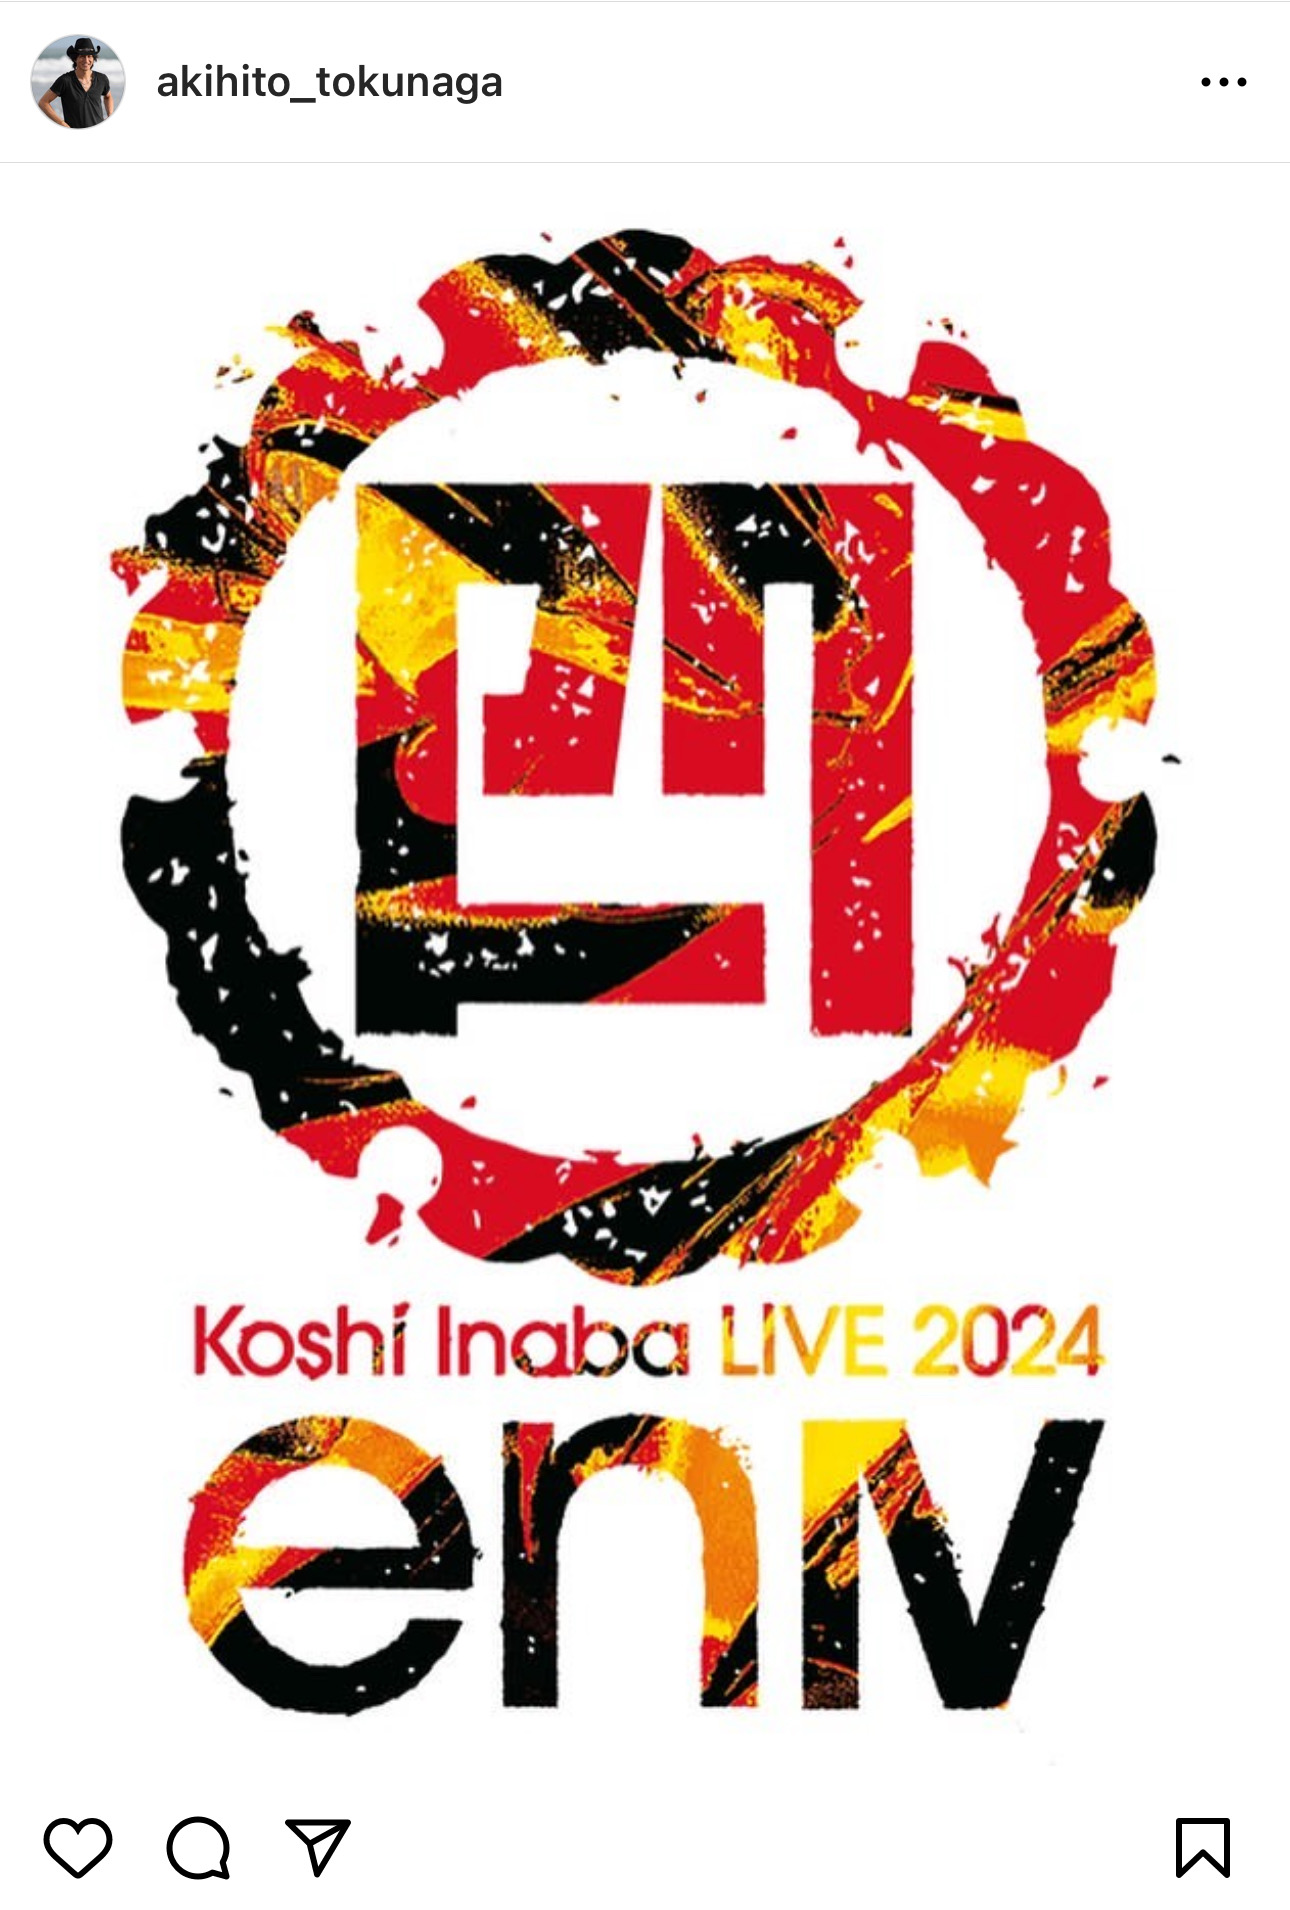 徳永暁人が『Koshi Inaba LIVE 2024 〜enⅣ〜』参加を告知した際のInstaga投稿